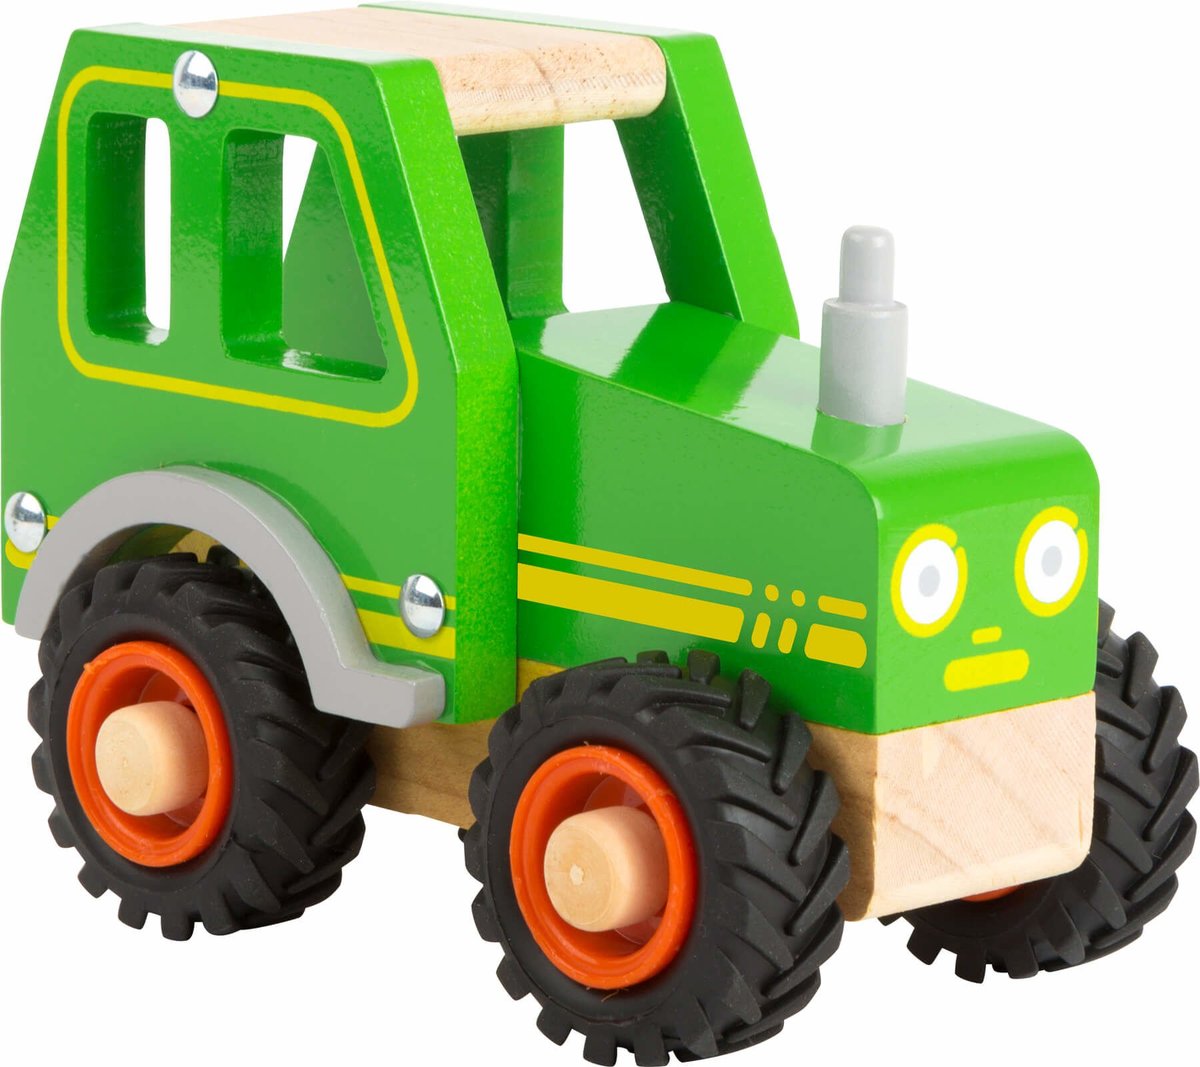 Small Foot by Legler traktor Small Foot 11078 z drewna dla dzieci od 18 miesiąca życia, 100% certyfikat FSC, dzięki dużym oponom gumowanym nadaje się również do zabawy na zewnątrz, zabawka, zielony